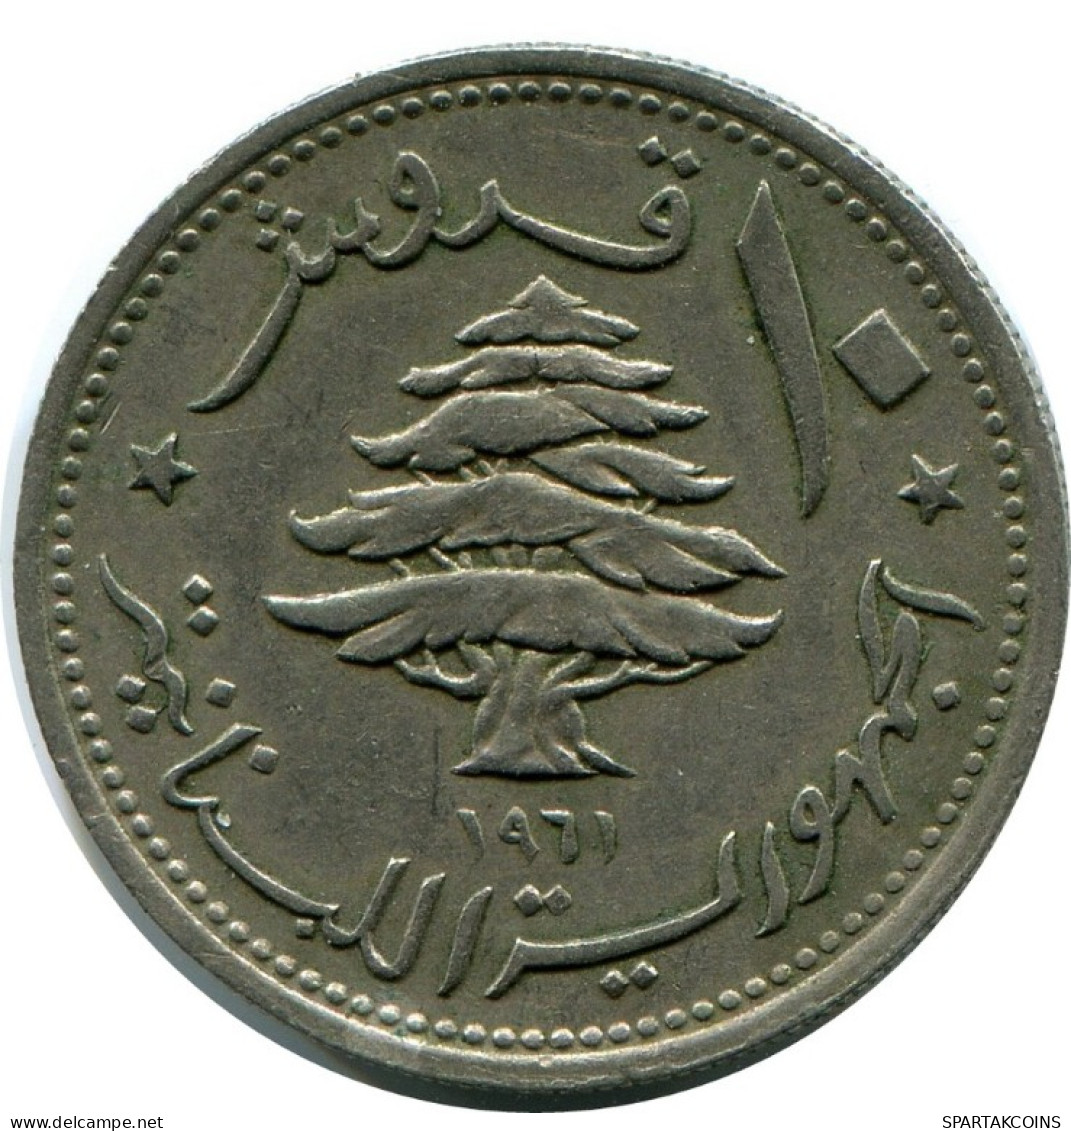 10 PIASTRES 1961 LEBANON Coin #AH859.U.A - Lebanon